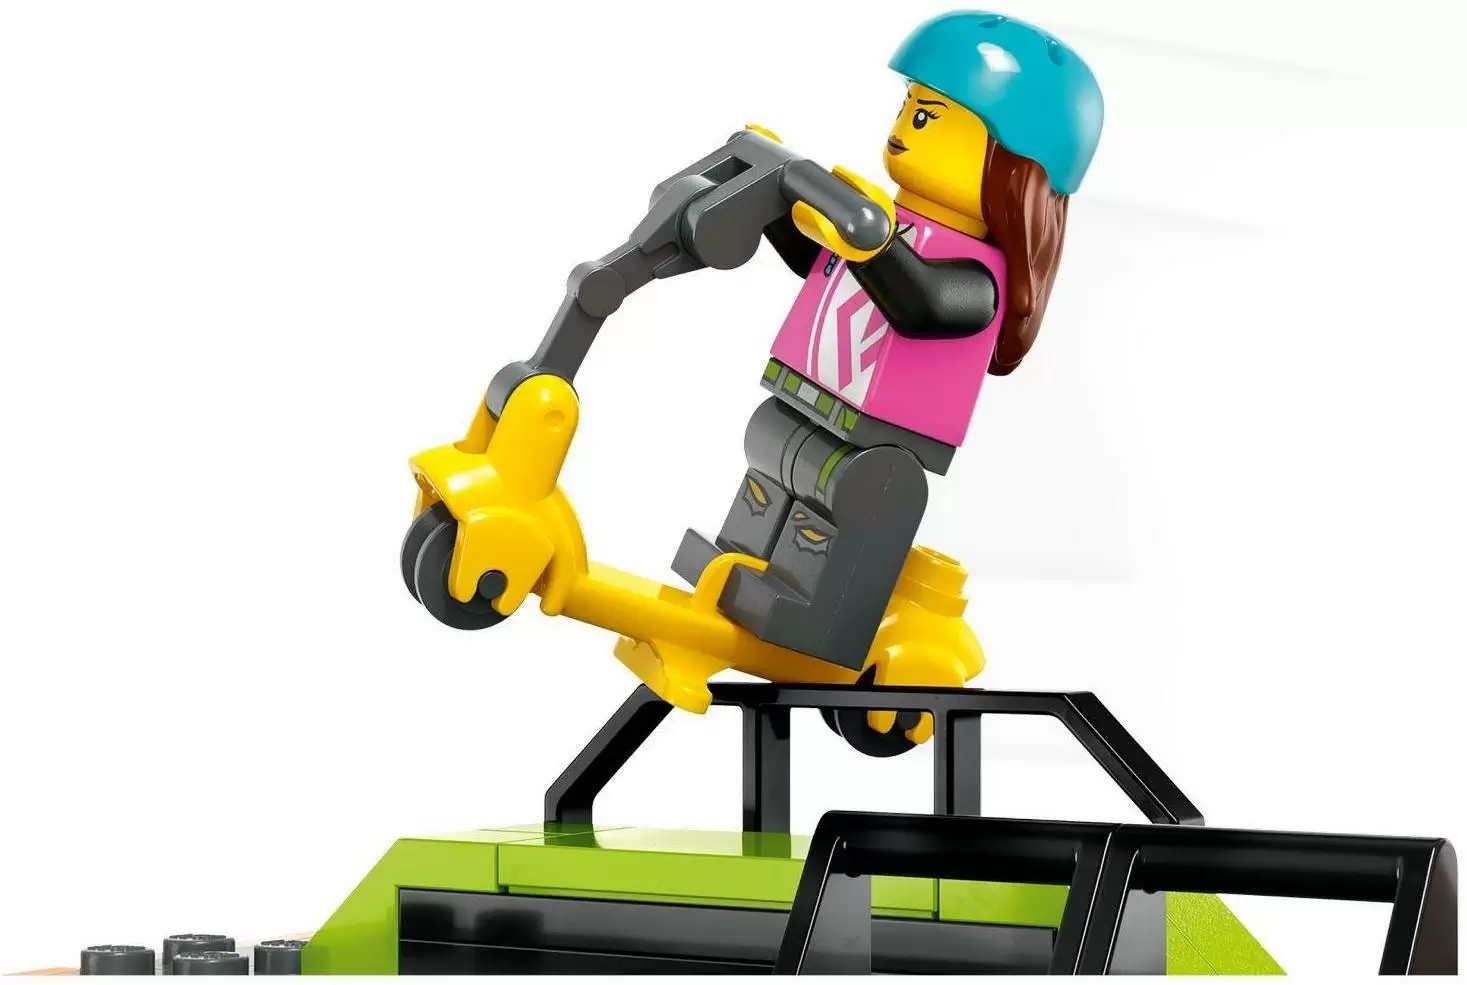 Конструктор LEGO City Уличный скейт-парк